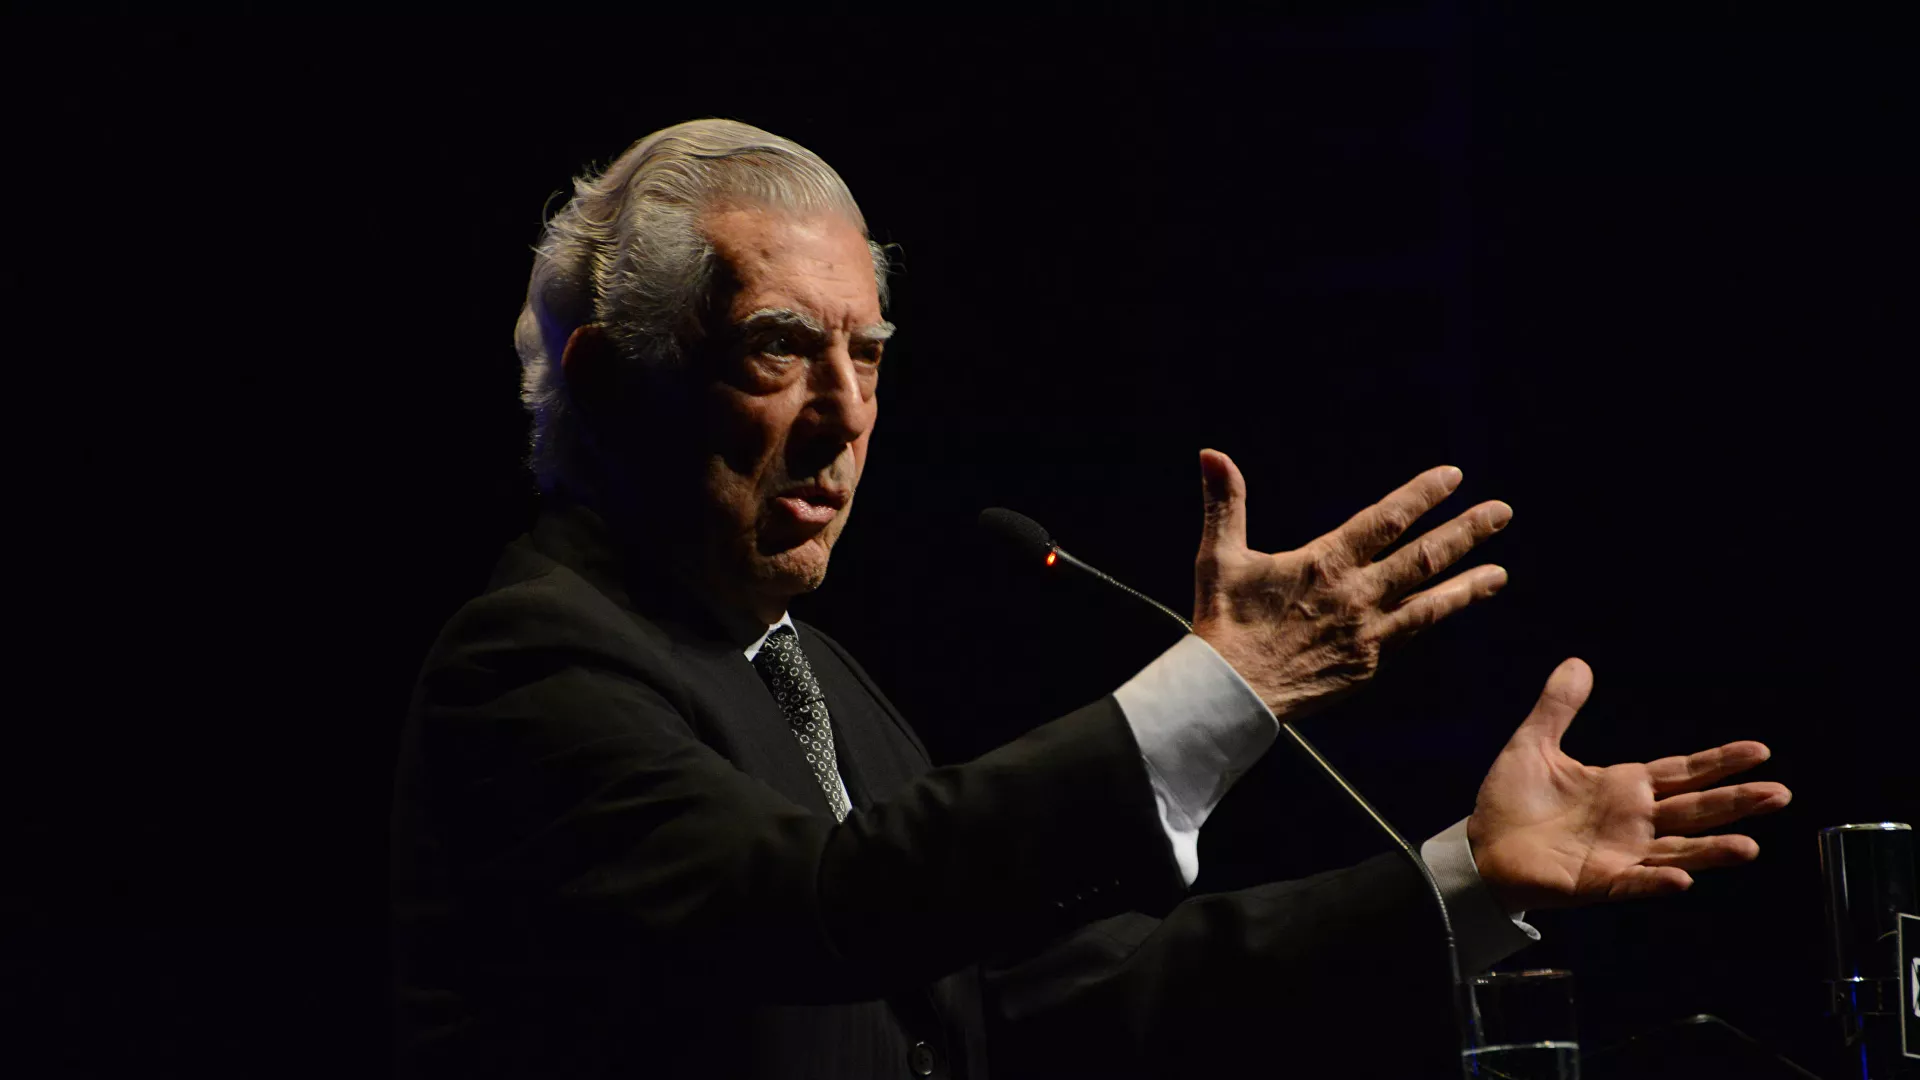  Rechazan ingreso de Vargas Llosa a la Academia Francesa por su «afinidad con la extrema derecha»